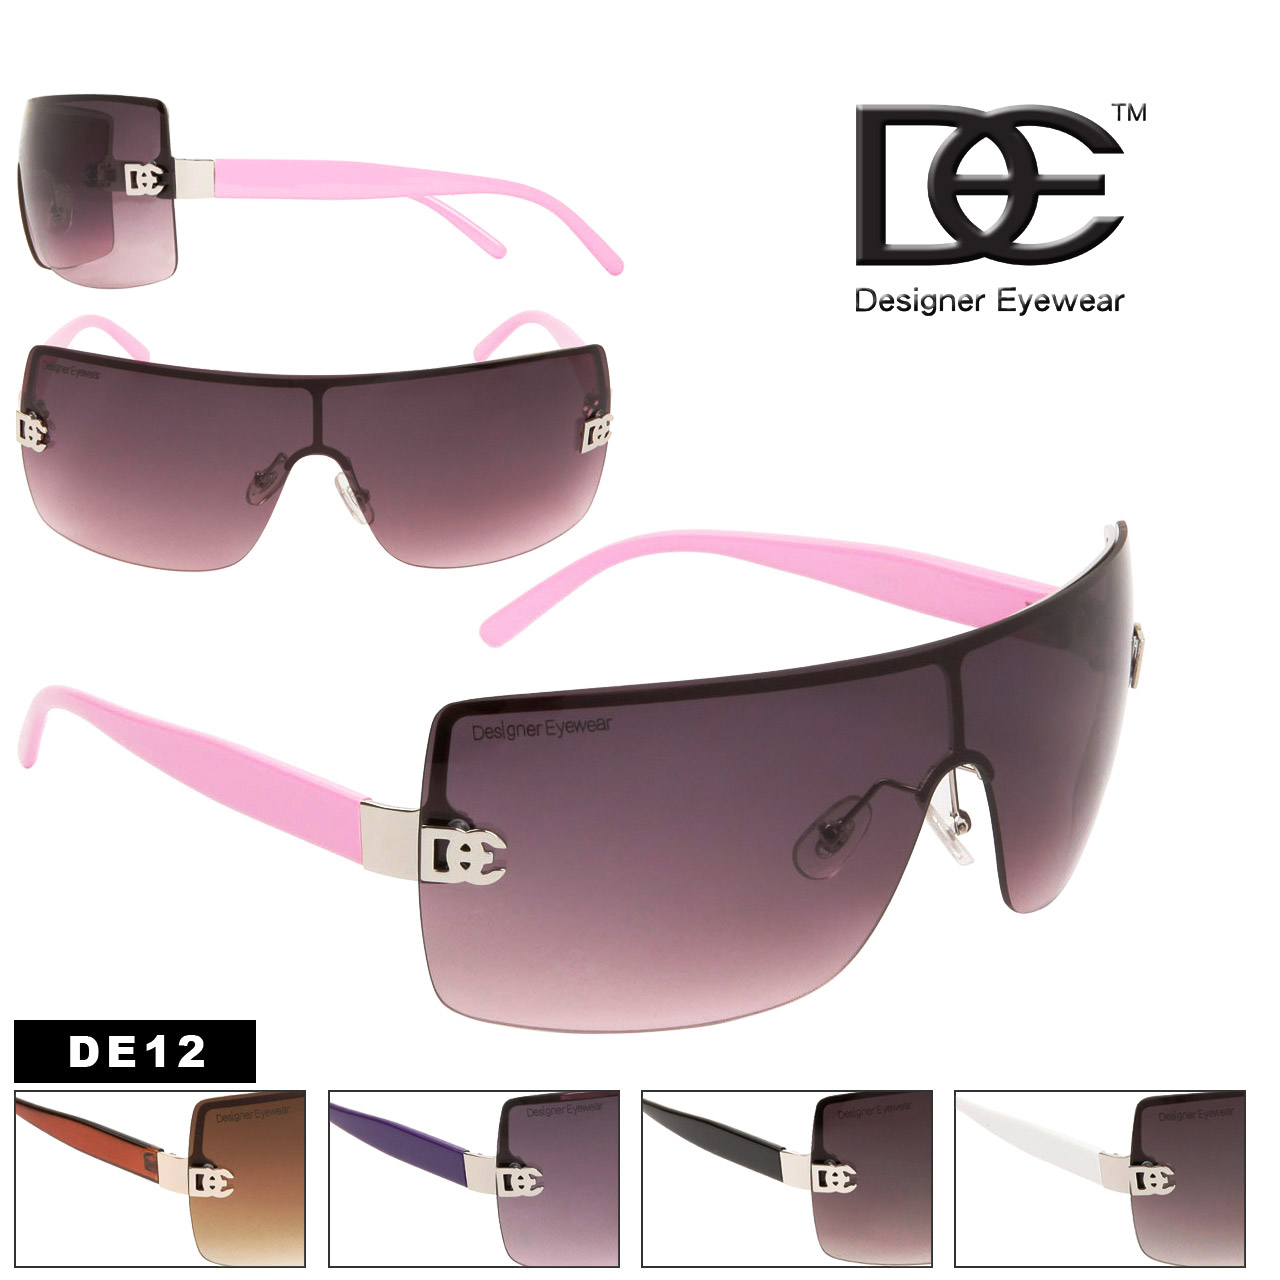 Wholesale Fashion Sunglasses DE12 Designer Eyewear™ (Assorted Colors) (12 pcs.)